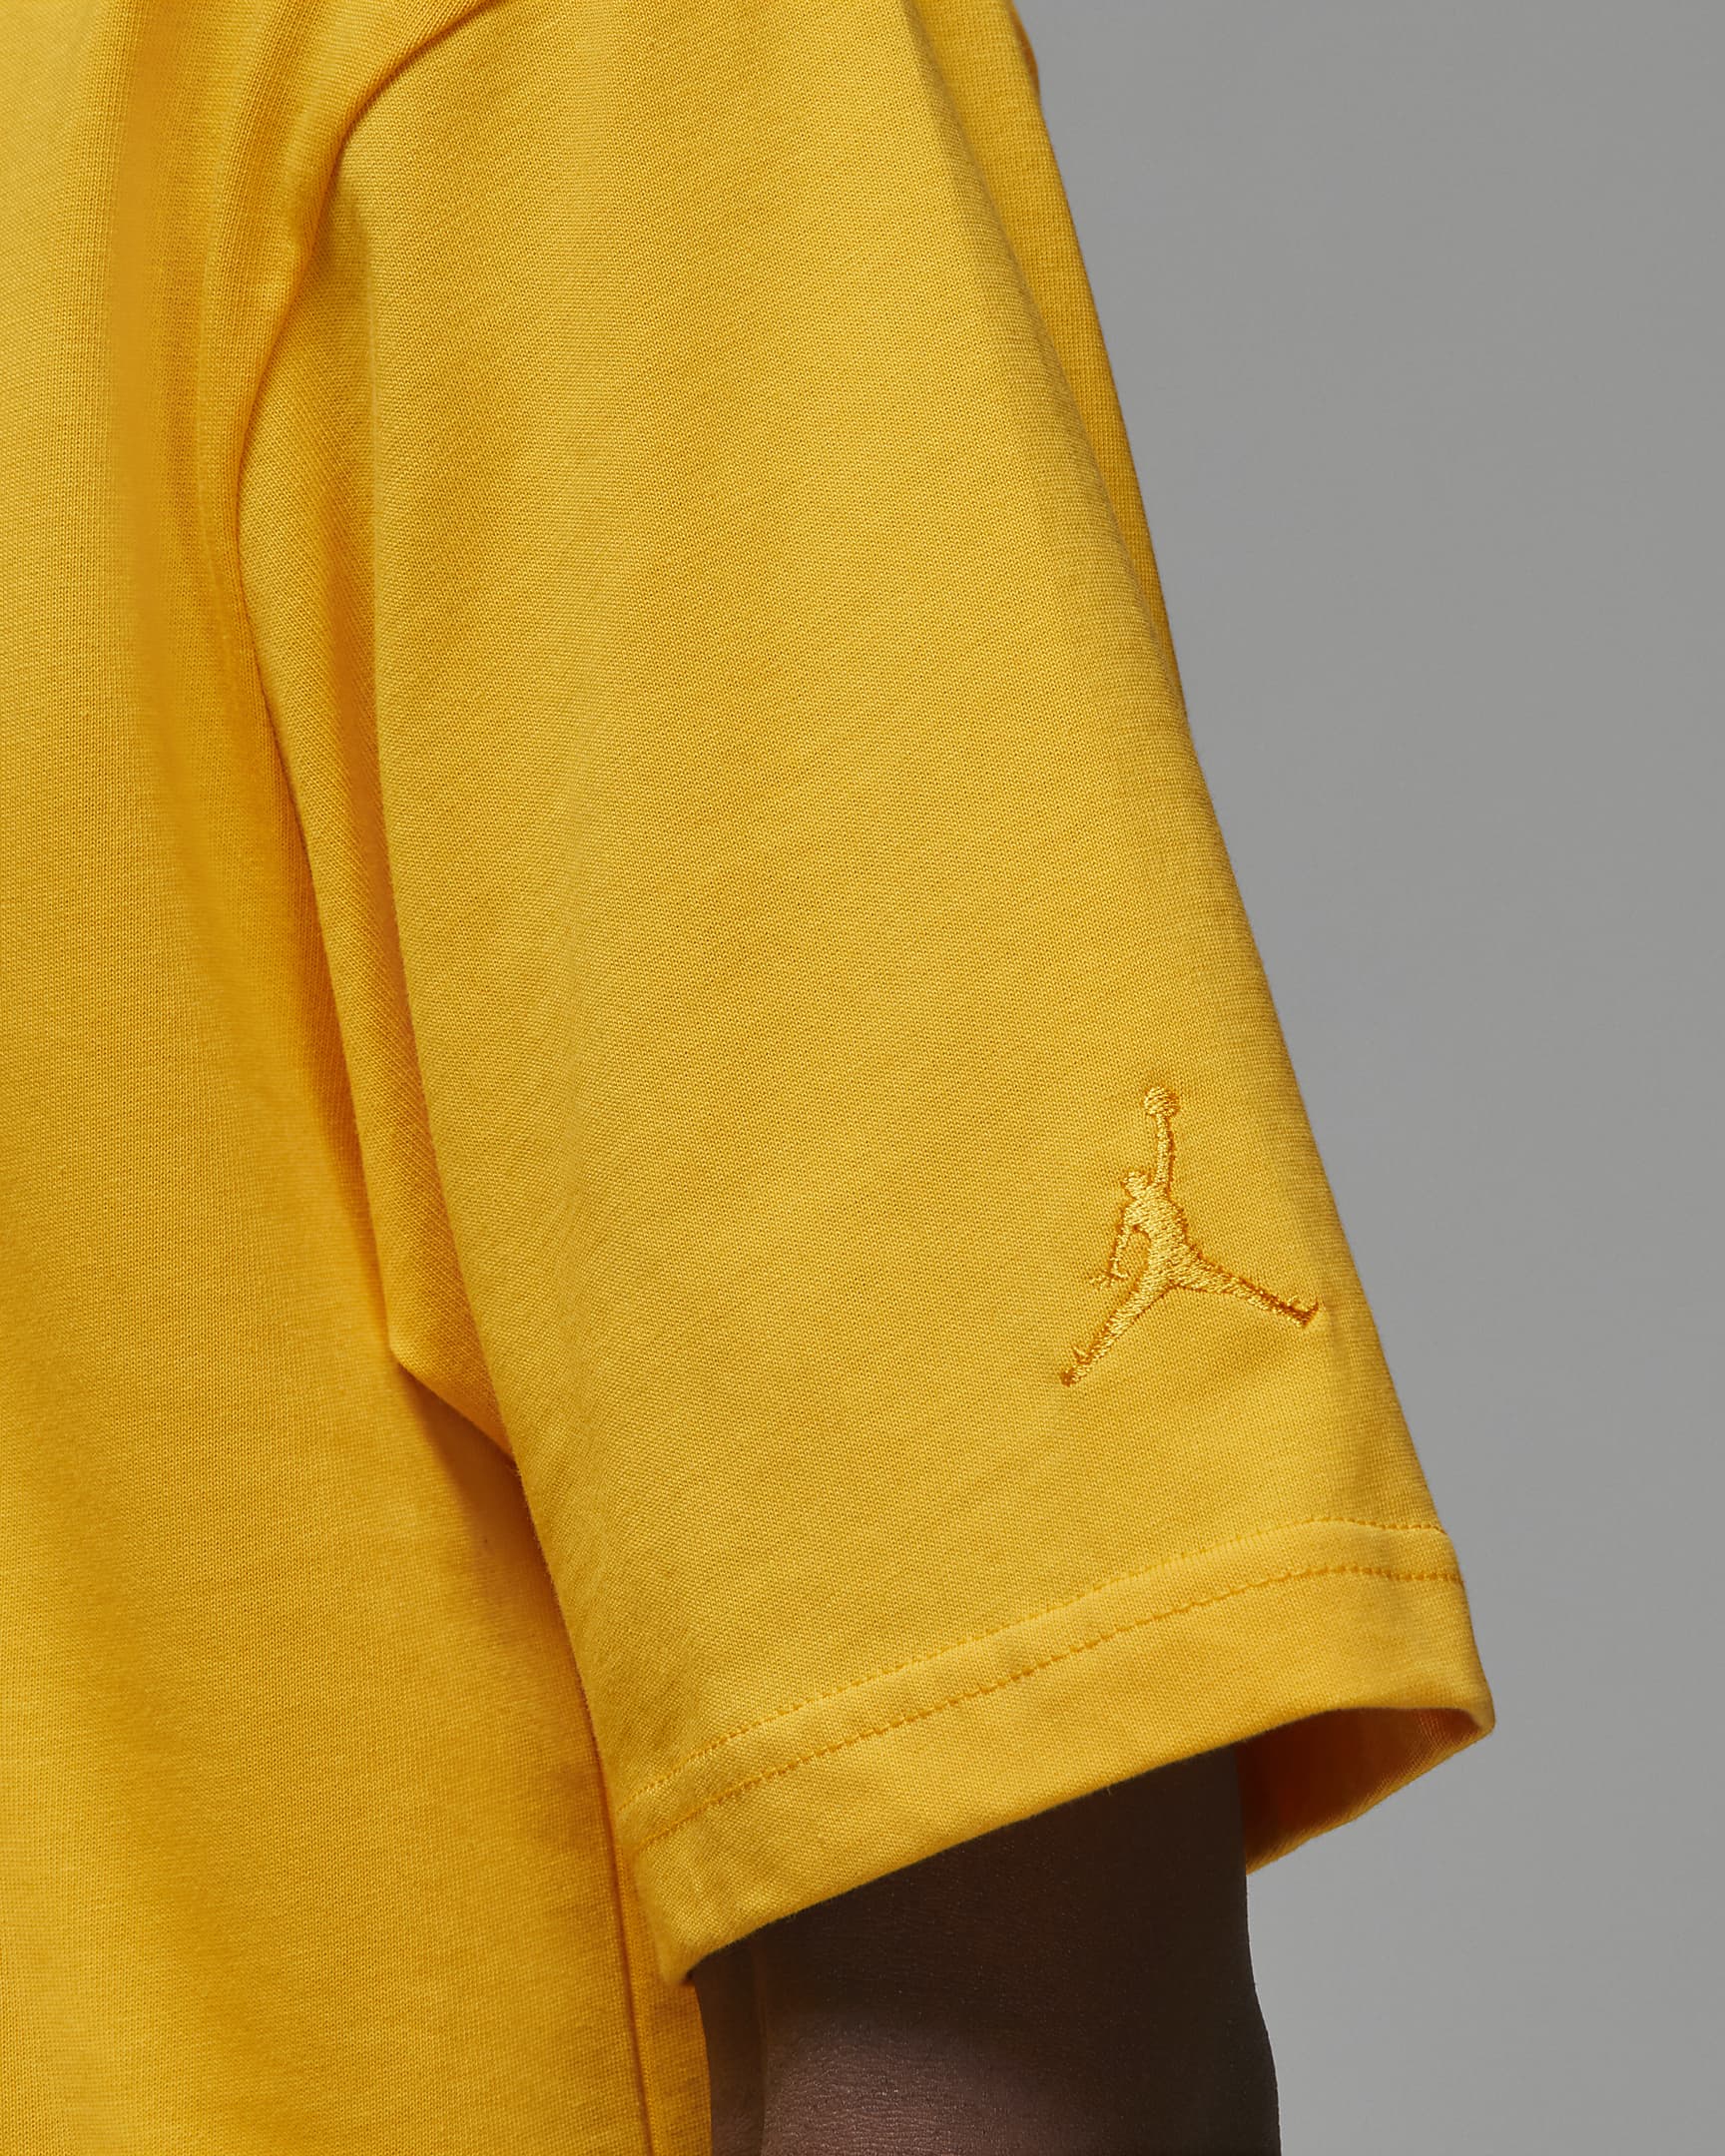 Air Jordan Wordmark Men's T-Shirt. Nike UK